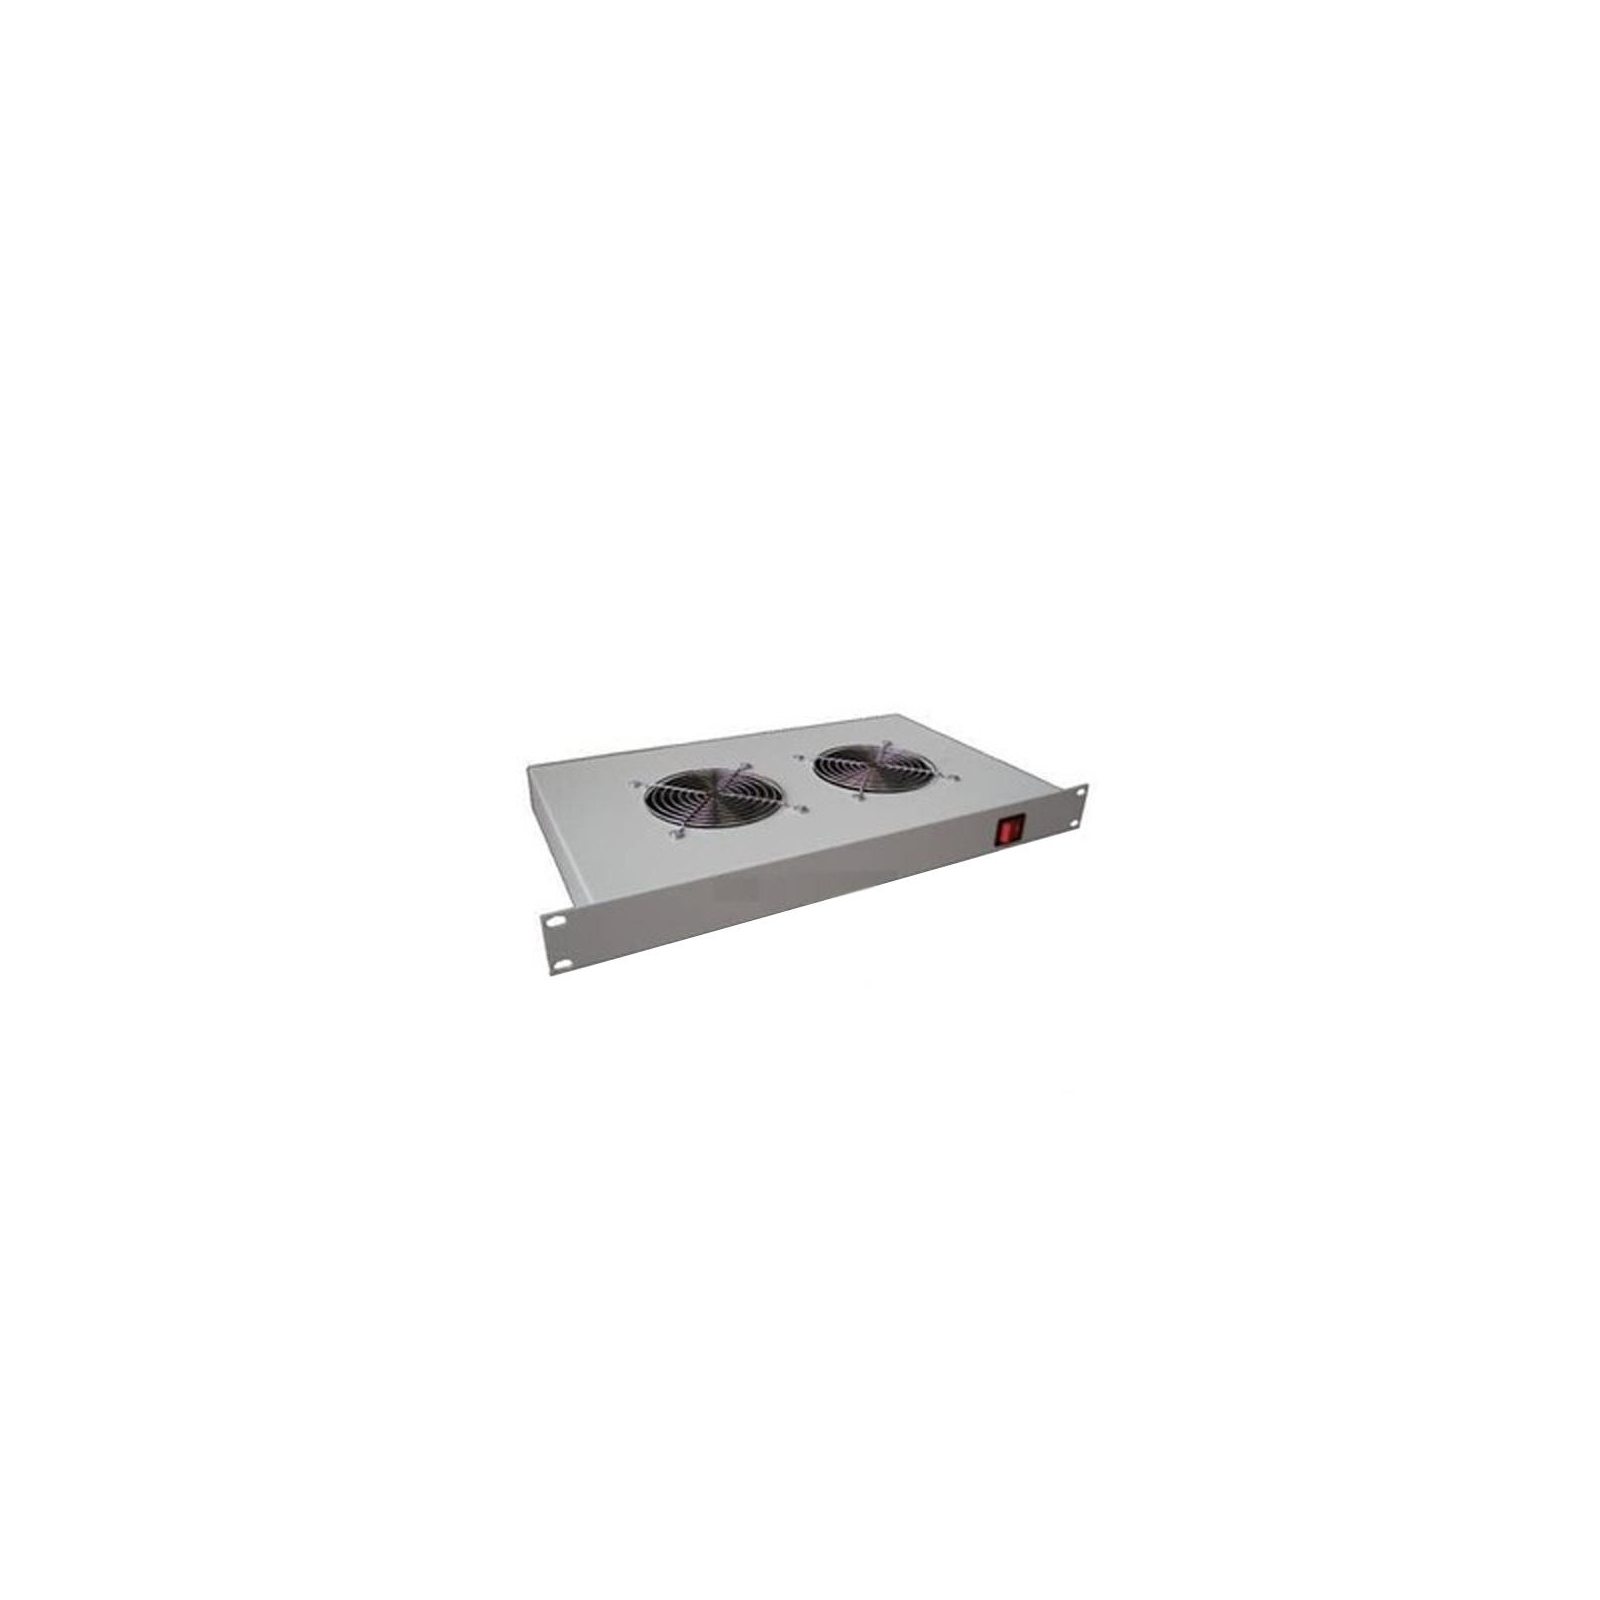 Вентиляторний модуль CSV 2 вентилятора для шкафа (00893)